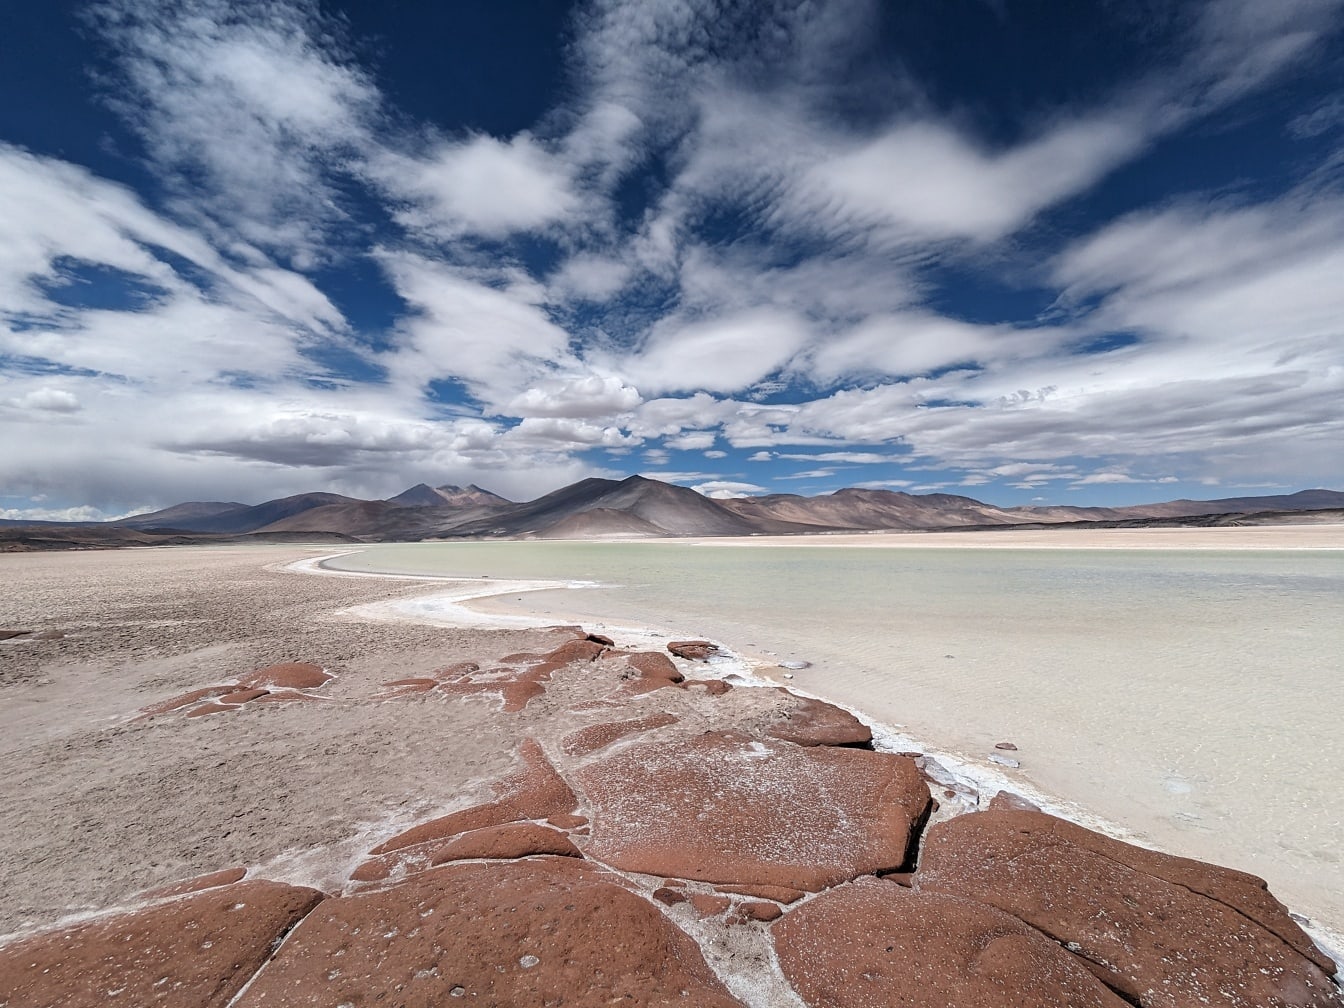 Maiestuoasă plajă sărată într-o lagună de sare pe un platou de mare altitudine în deșertul din Chile